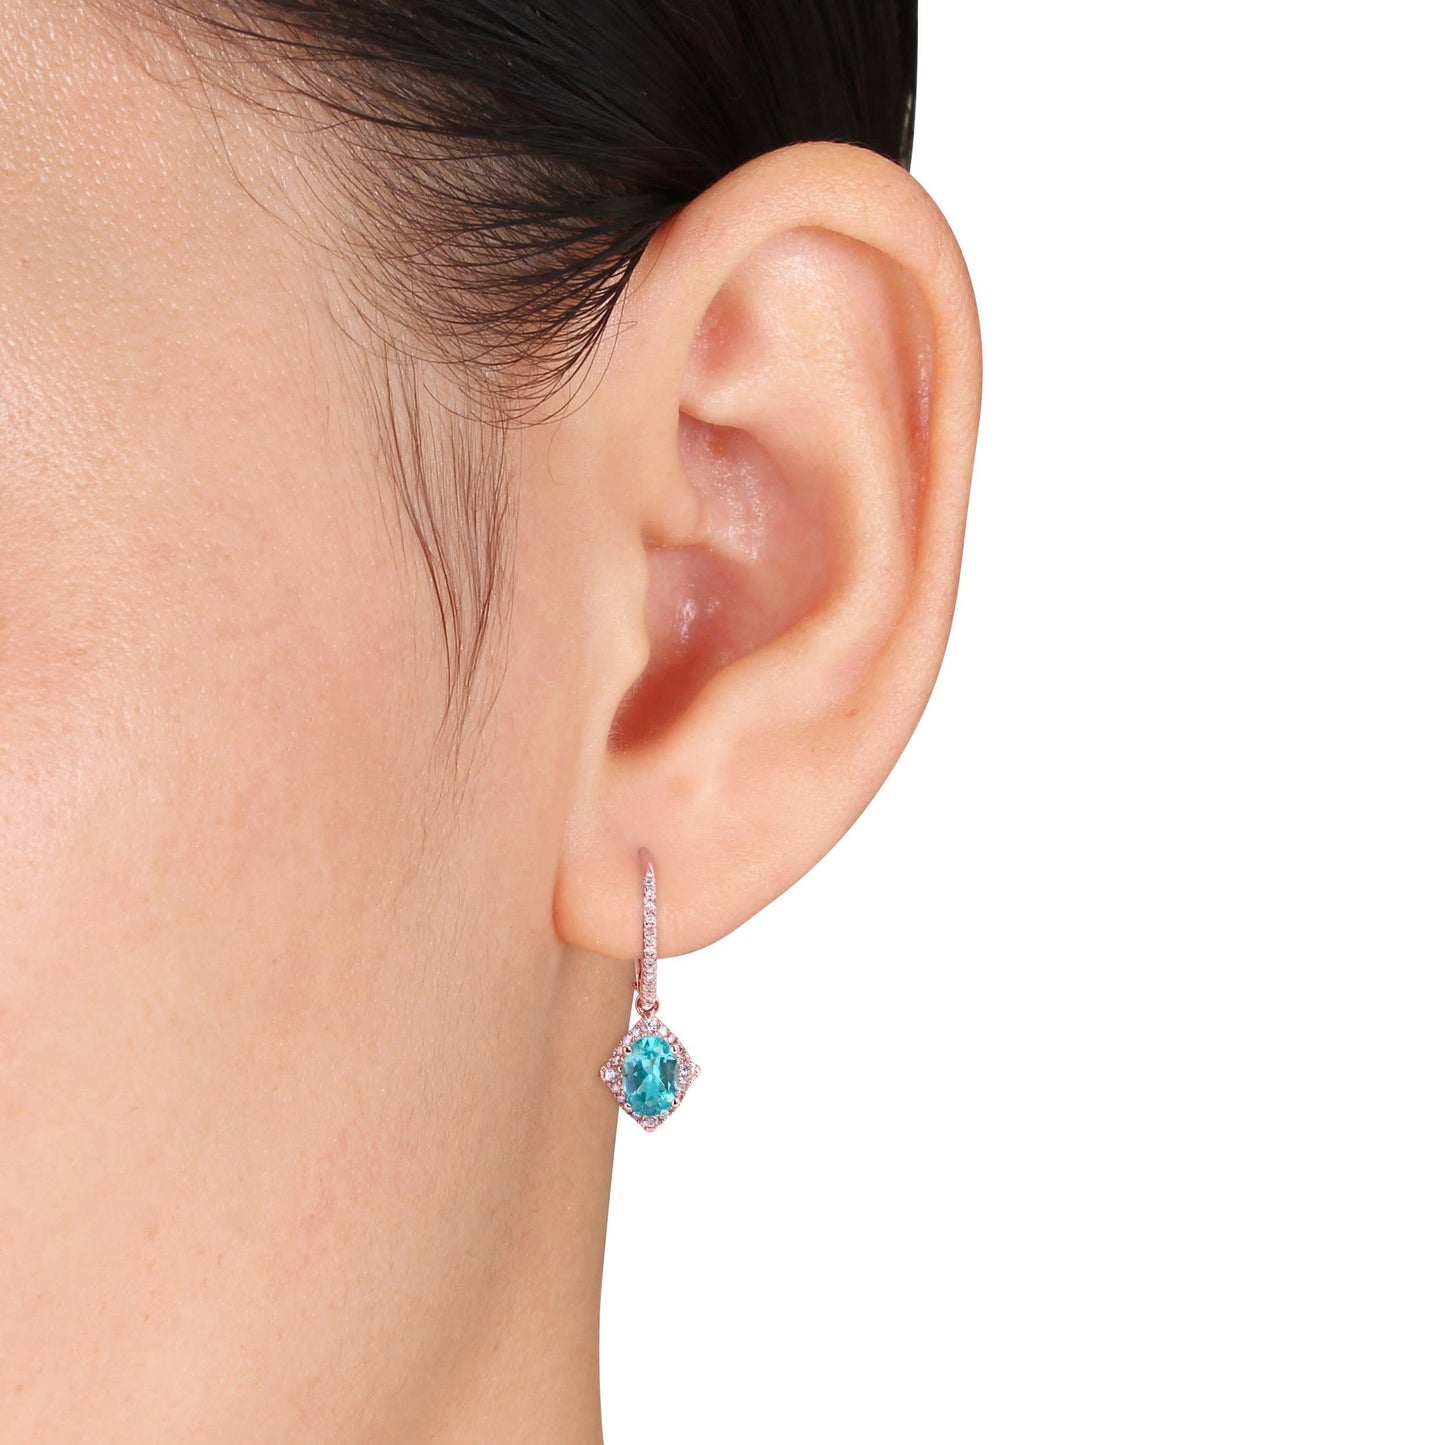 Diamond, Apatite, & White Sapphire Earrings